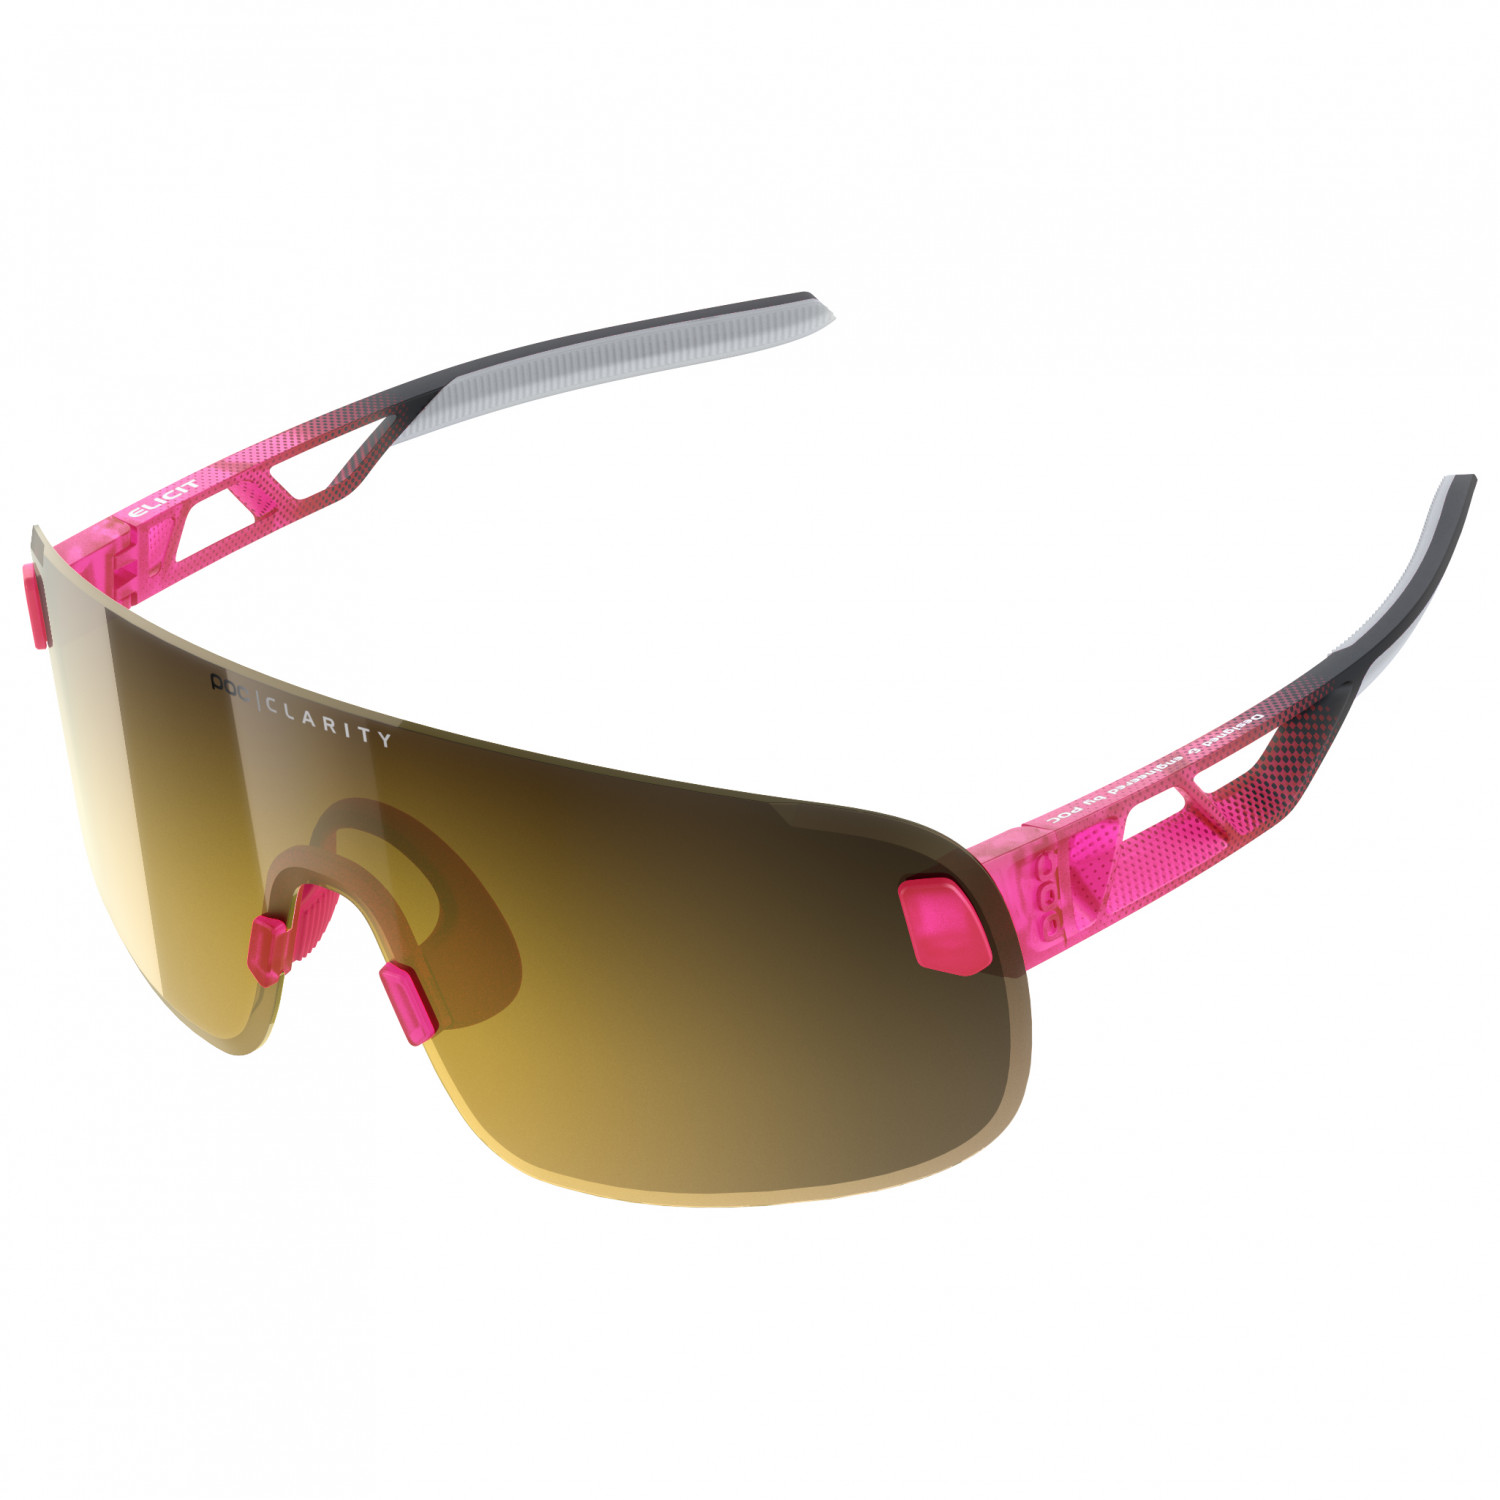 Велосипедные очки Poc Elicit S2 (VLT 16%), цвет Fluorescent Pink/Uranium Black Translucent